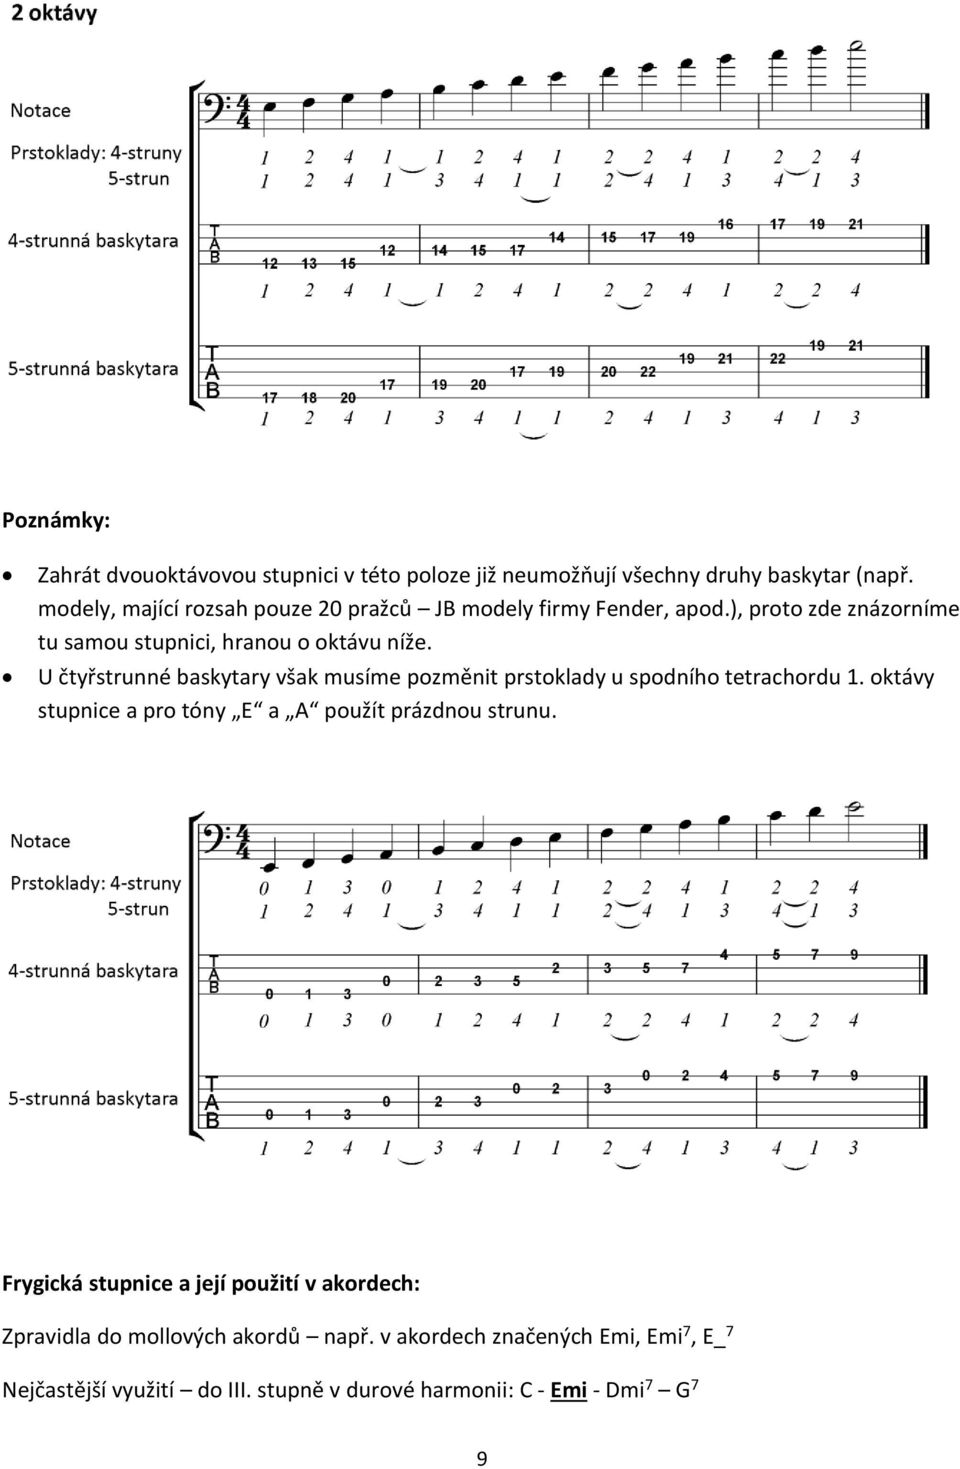 U čtyřstrunné baskytary však musíme pozměnit prstoklady u spodního tetrachordu 1. oktávy stupnice a pro tóny E a A použít prázdnou strunu.